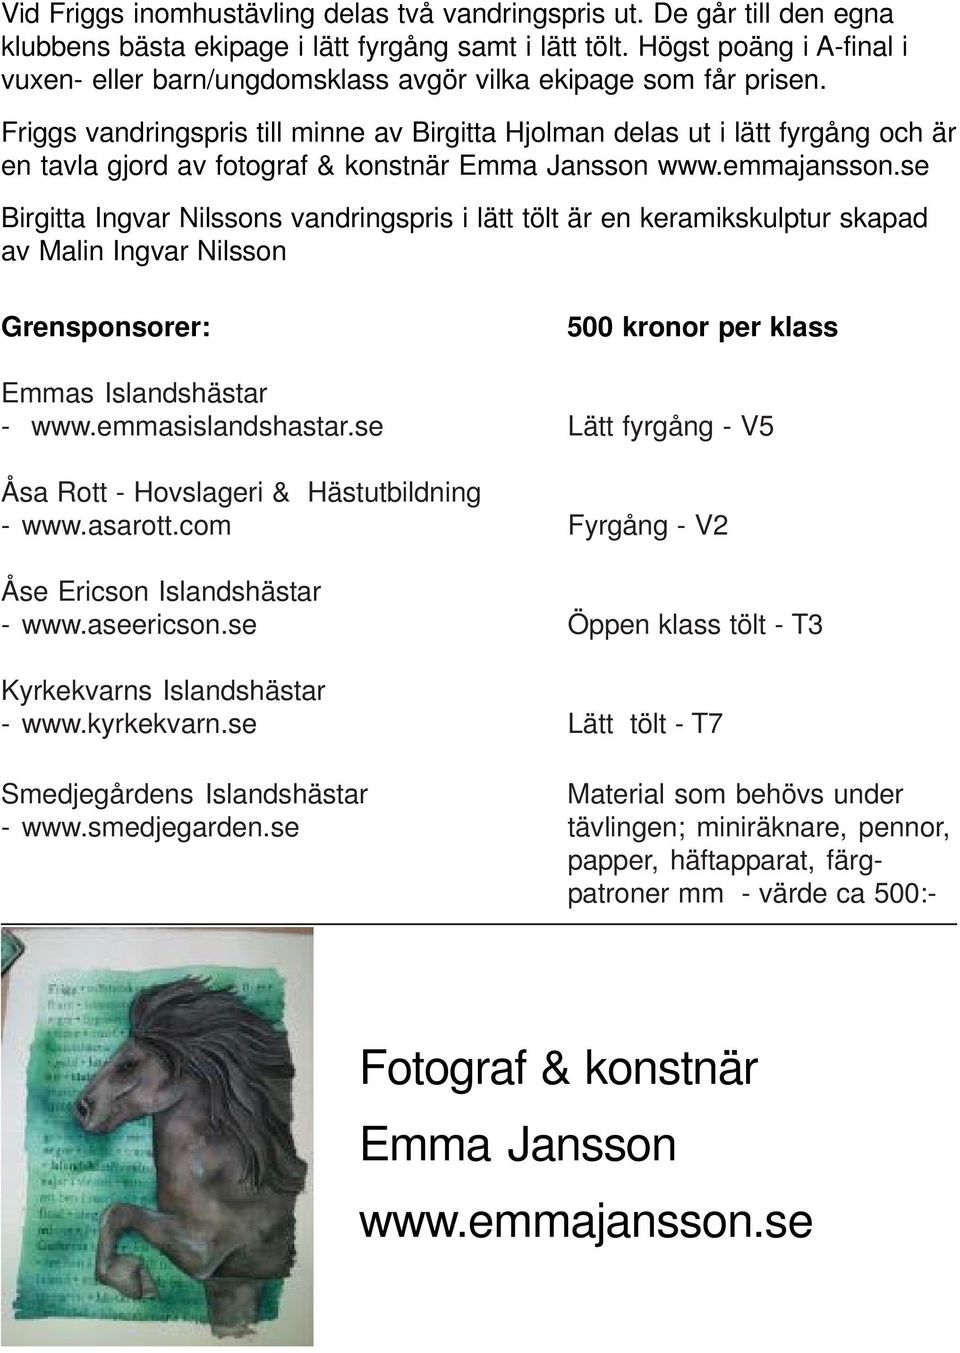 Friggs vandringspris till minne av Birgitta Hjolman delas ut i lätt fyrgång och är en tavla gjord av fotograf & konstnär Emma Jansson www.emmajansson.